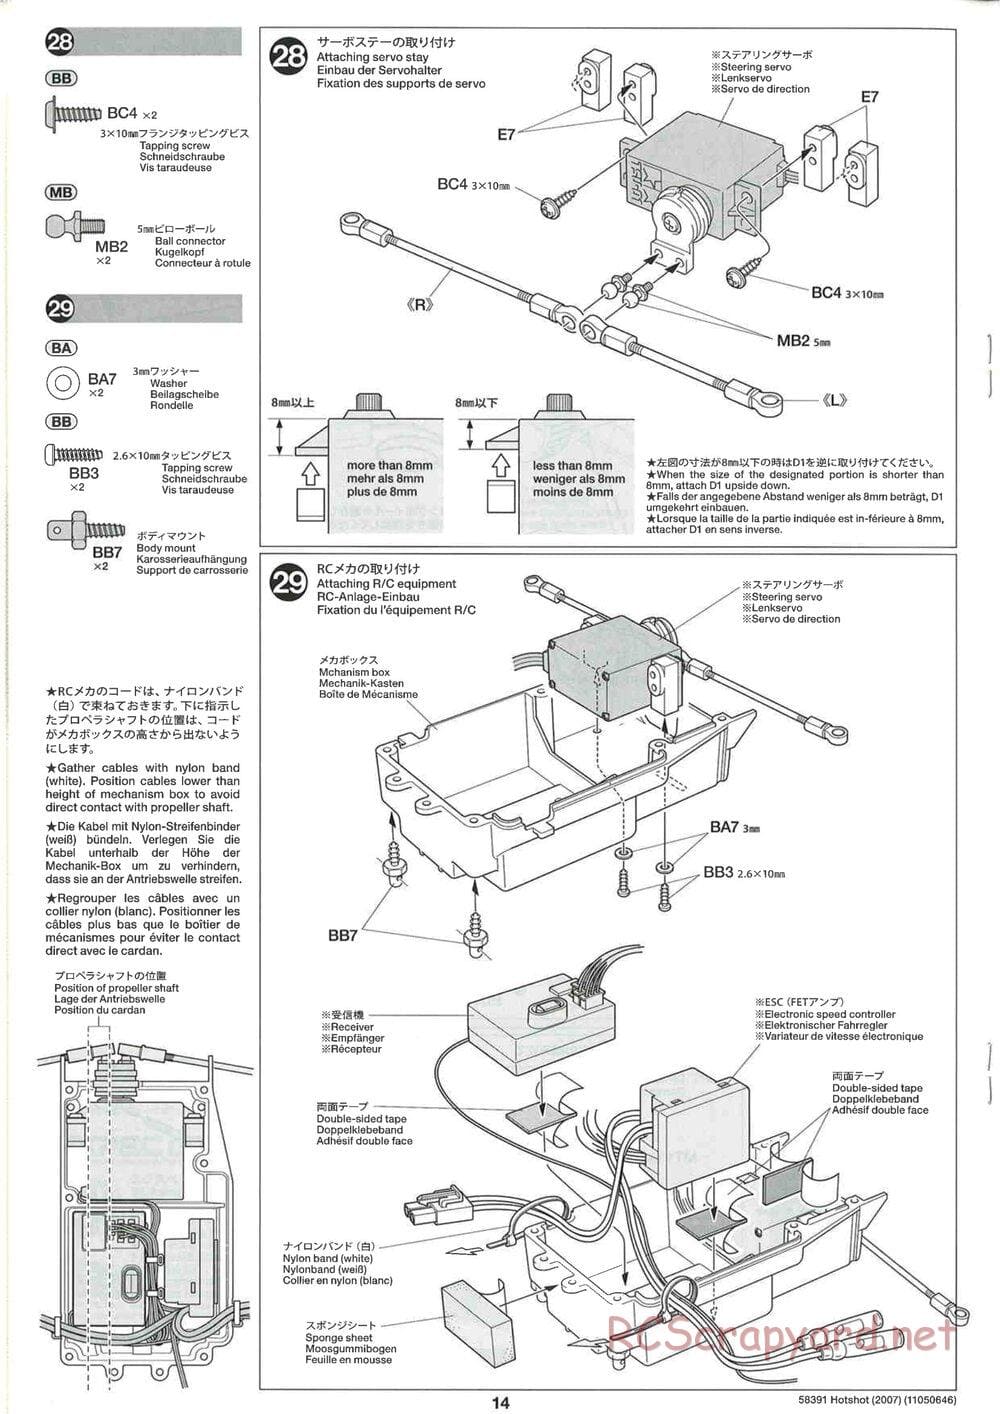 Tamiya - Hotshot - 2007 - HS Chassis - Manual - Page 14